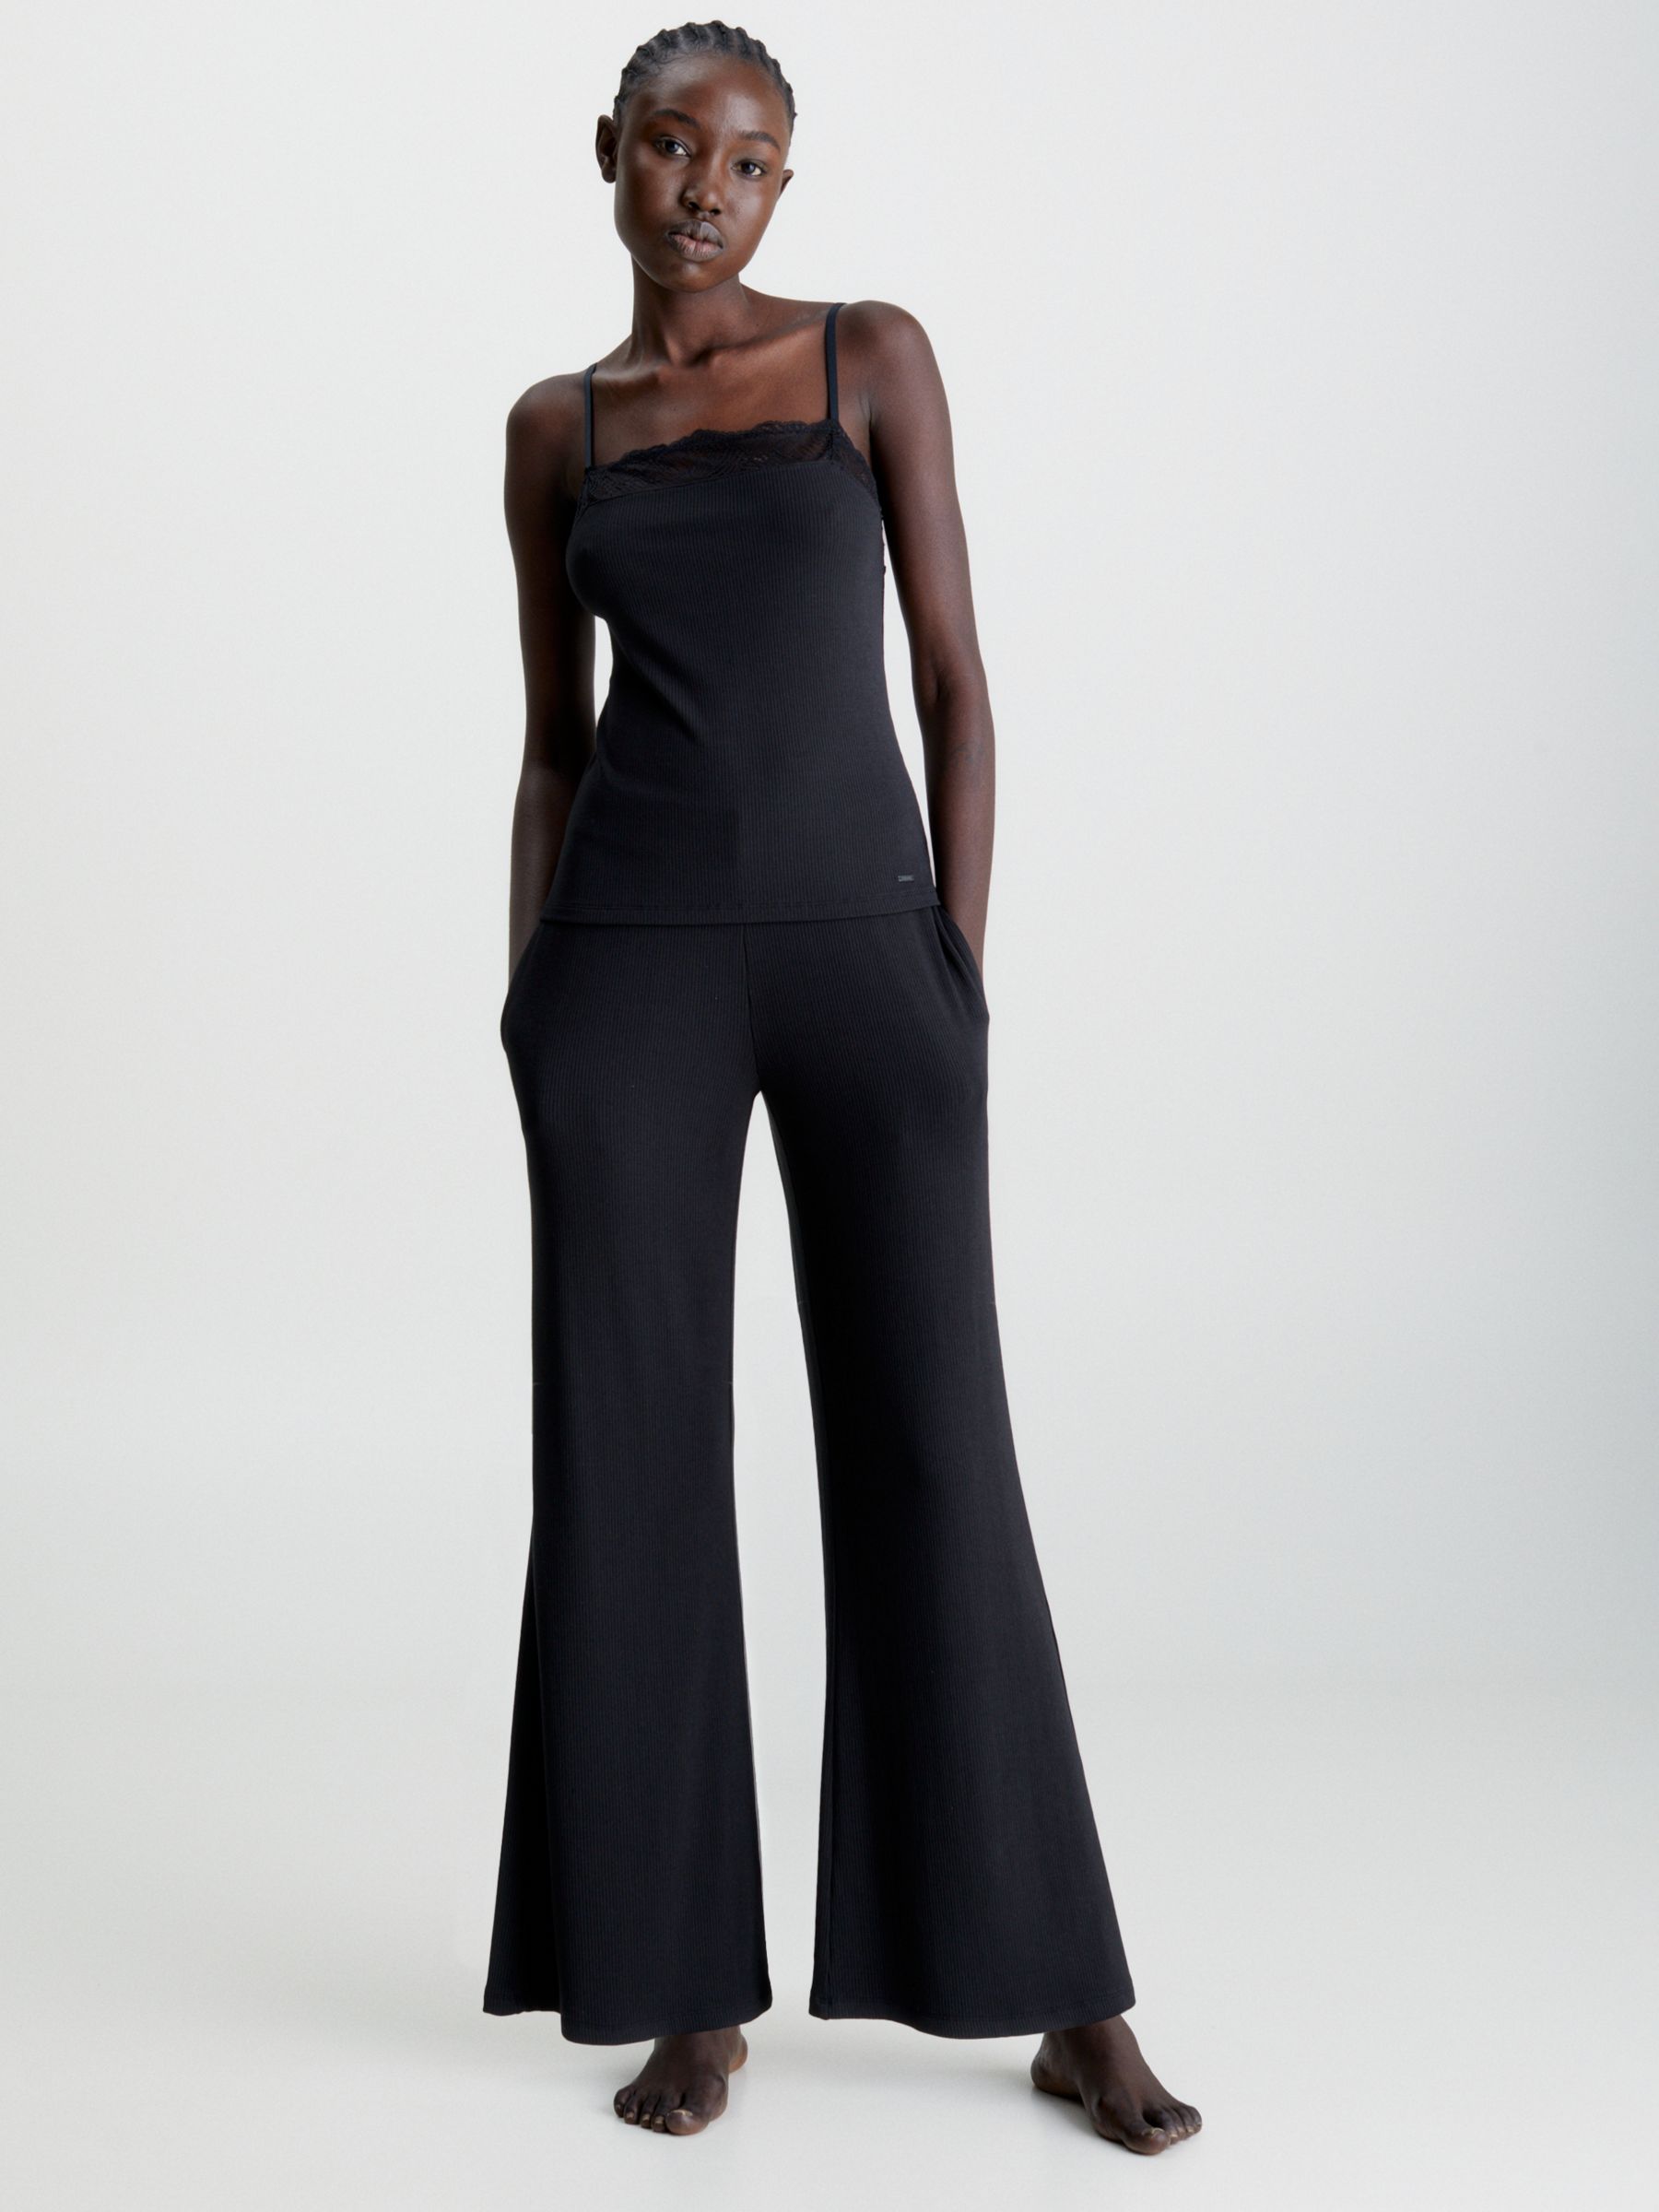 черные брюки для отдыха the lou gil rodriguez Брюки для отдыха Calvin Klein Sophisticated, черные